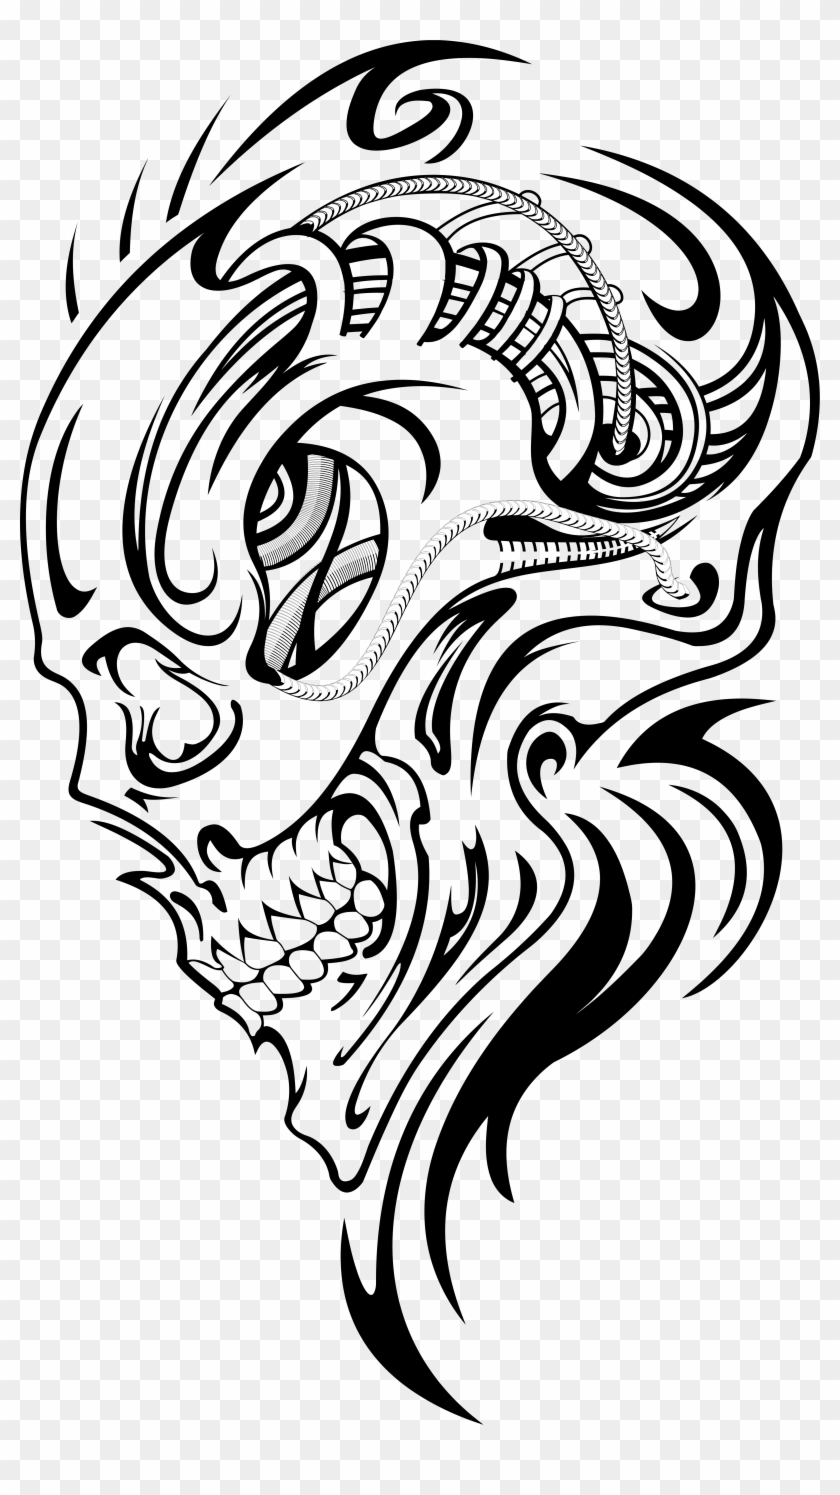 3991 X 6914 6 - Tribal Skull Tattoo Line Art Clipart #466521